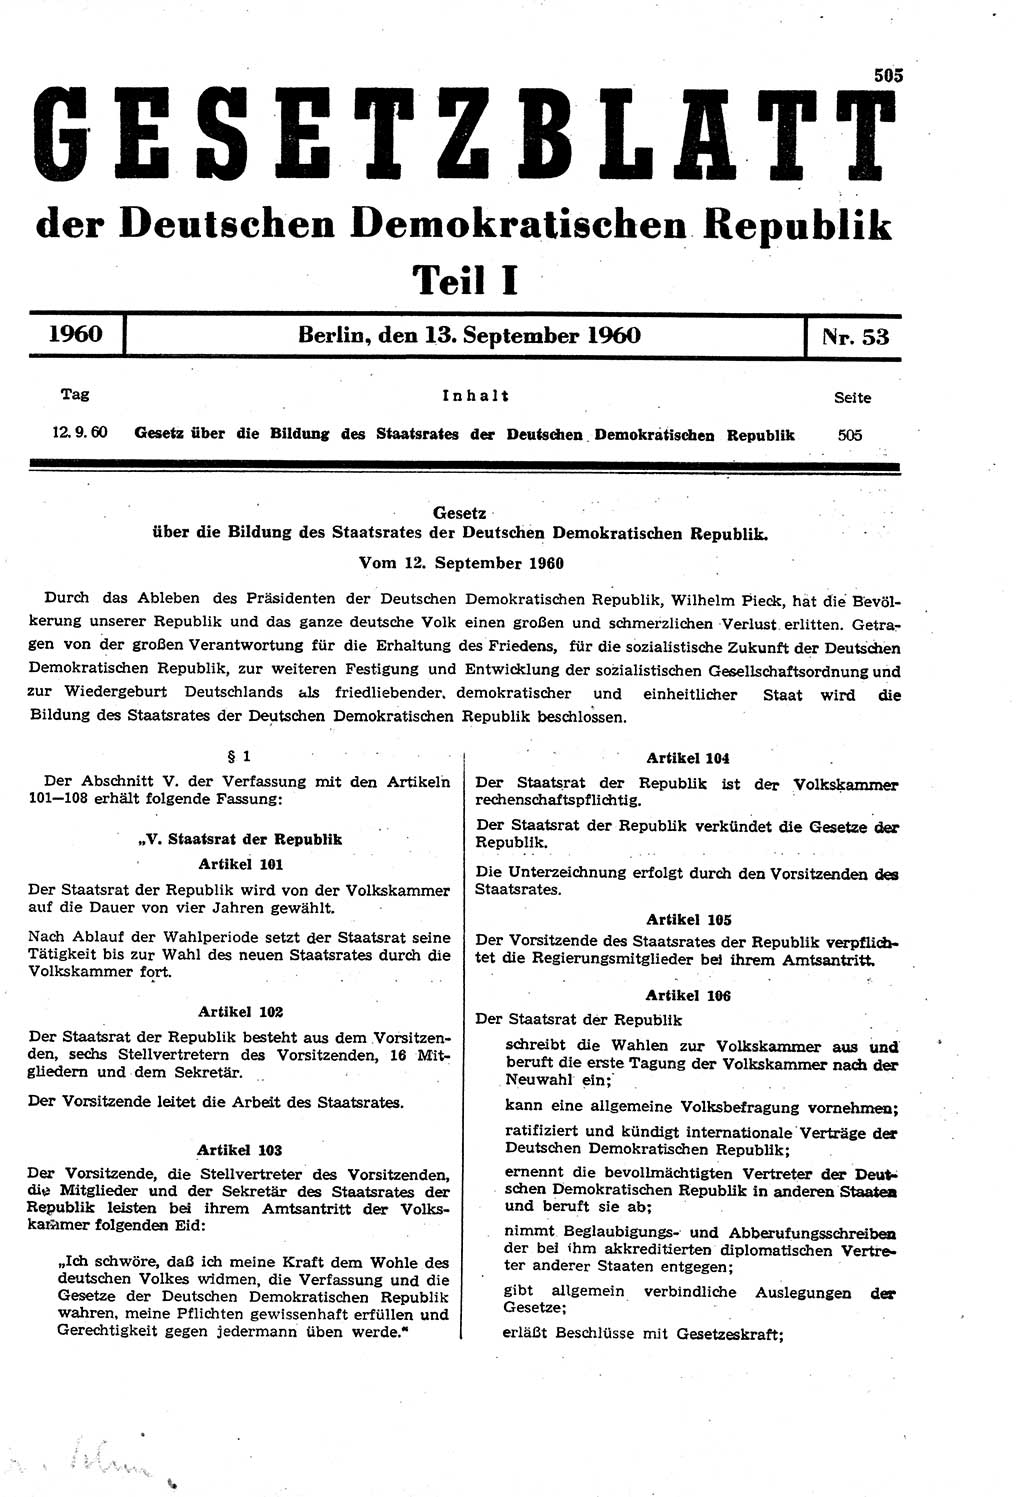 Gesetzblatt (GBl.) der Deutschen Demokratischen Republik (DDR) Teil Ⅰ 1960, Seite 505 (GBl. DDR Ⅰ 1960, S. 505)